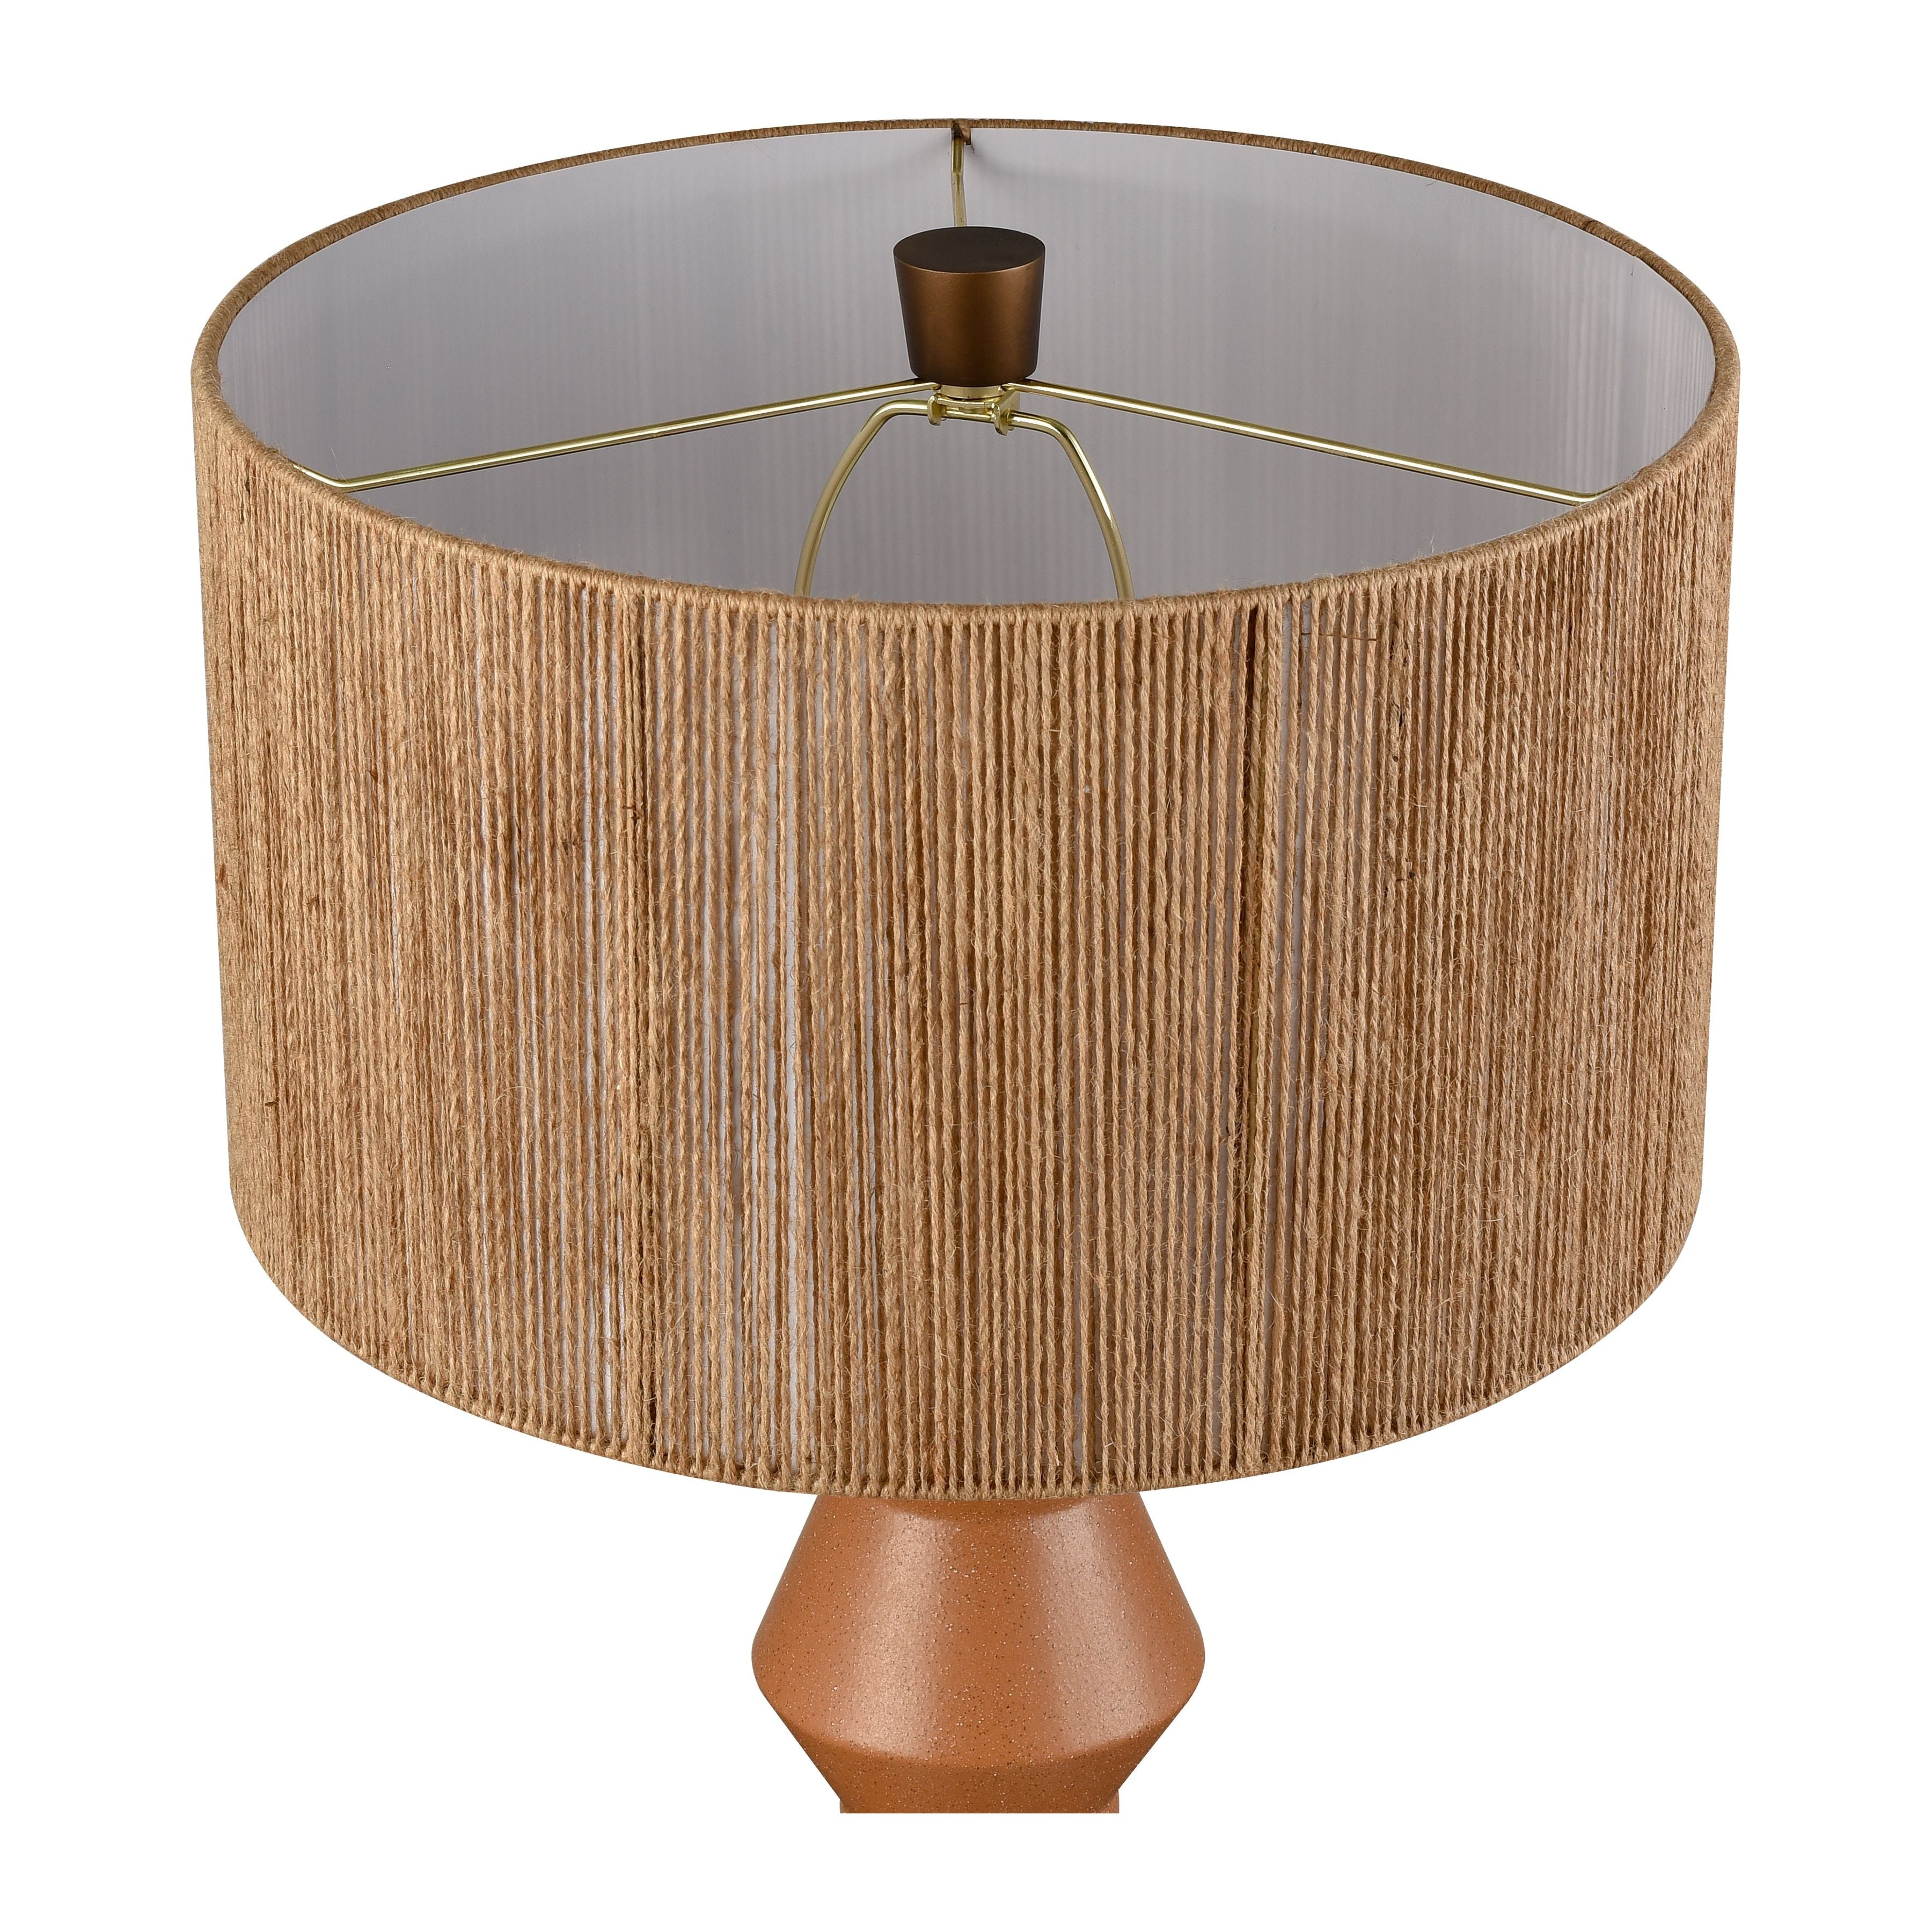 Belen 31" High 1-Light Table Lamp